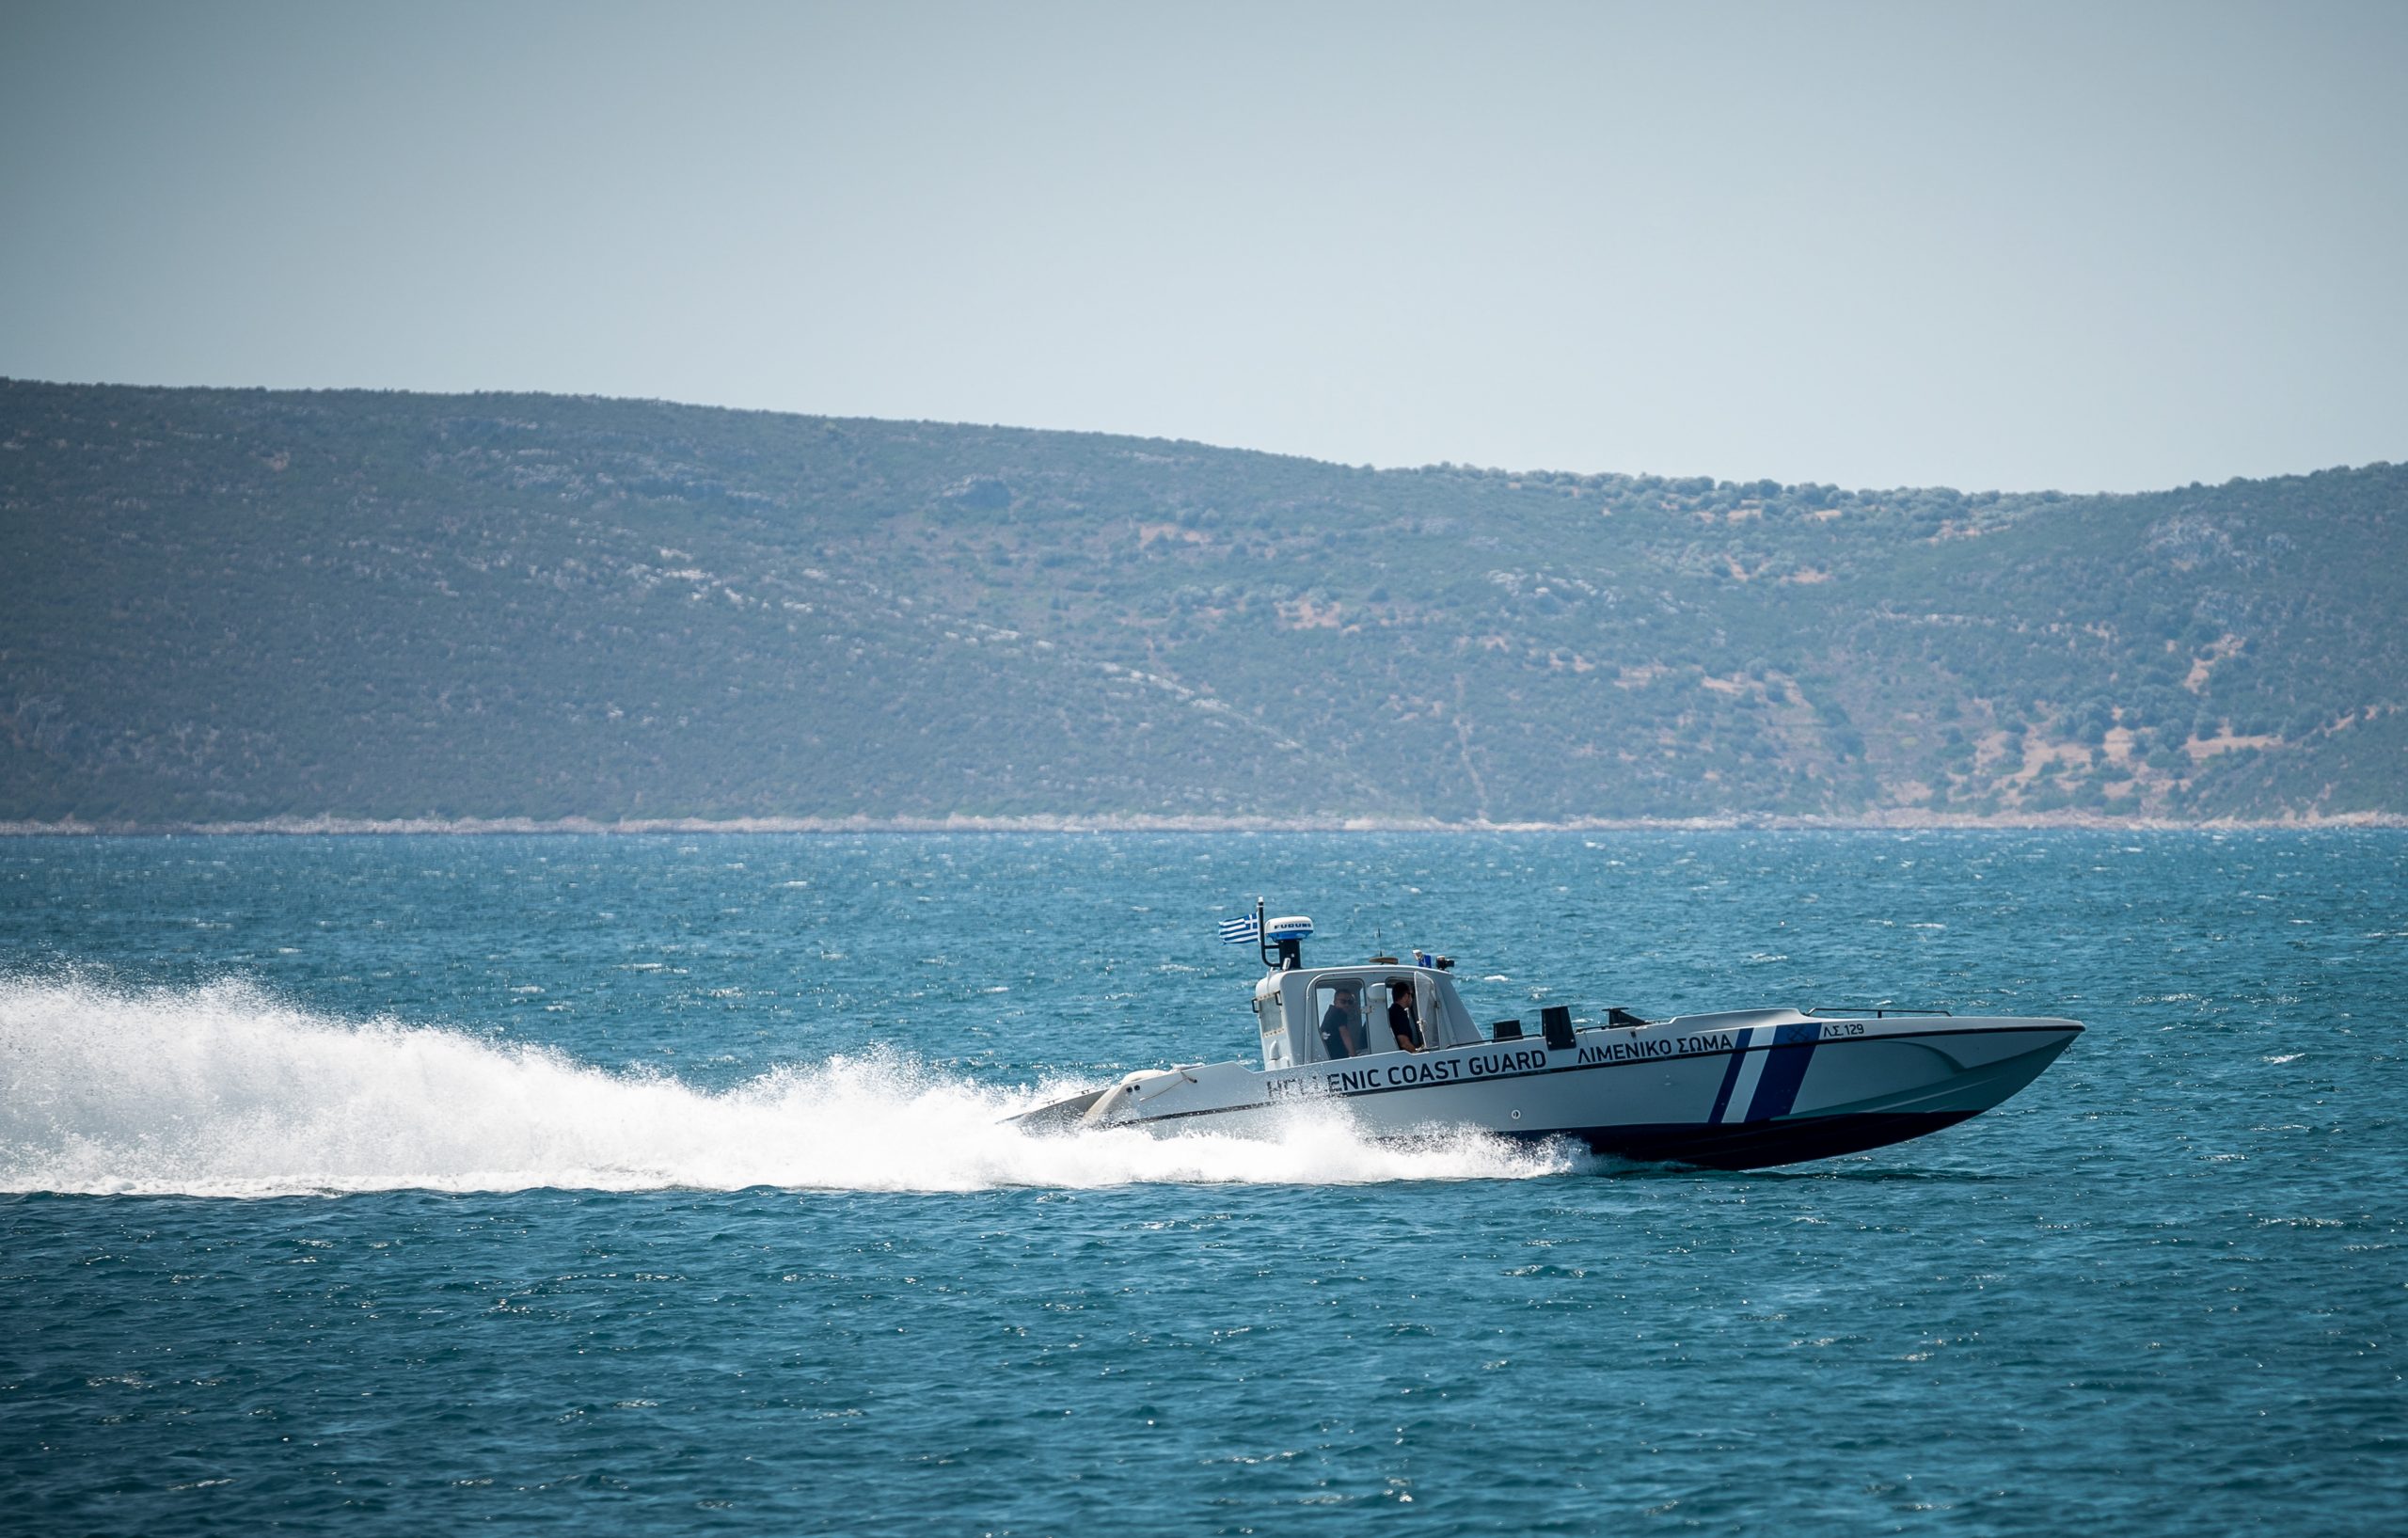 Σύγκρουση φορτηγών πλοίων στα ανοιχτά της Χίου